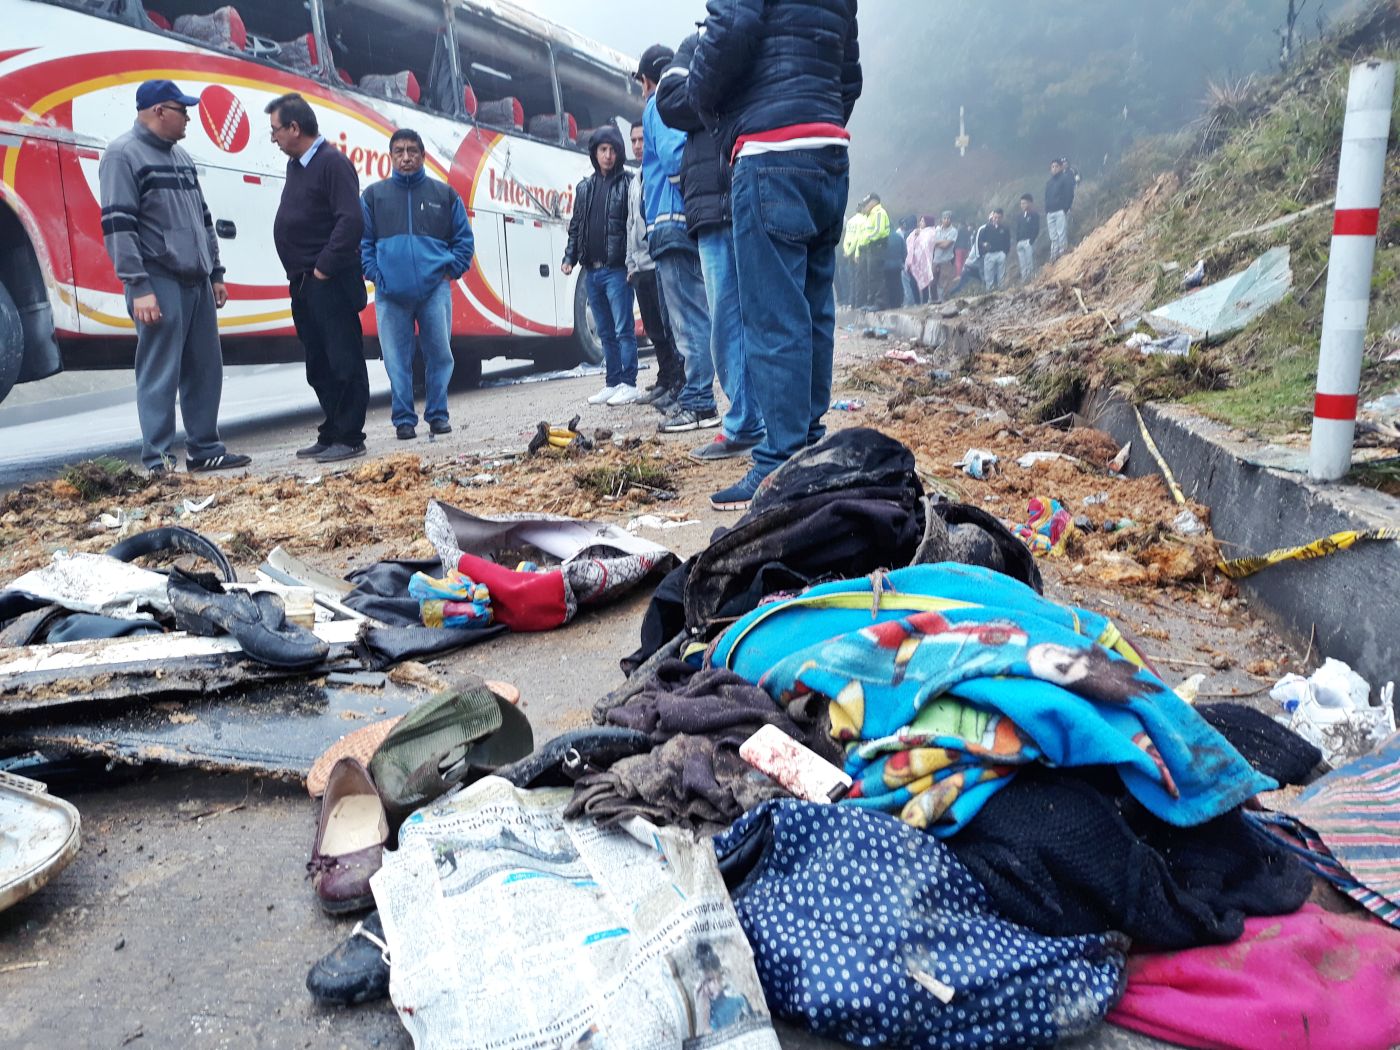  El accidente ocurrió en el kilómetro 20 de la vía Cuenca - Loja, en el sector conocido como Gañadel. Foto: Archivo.